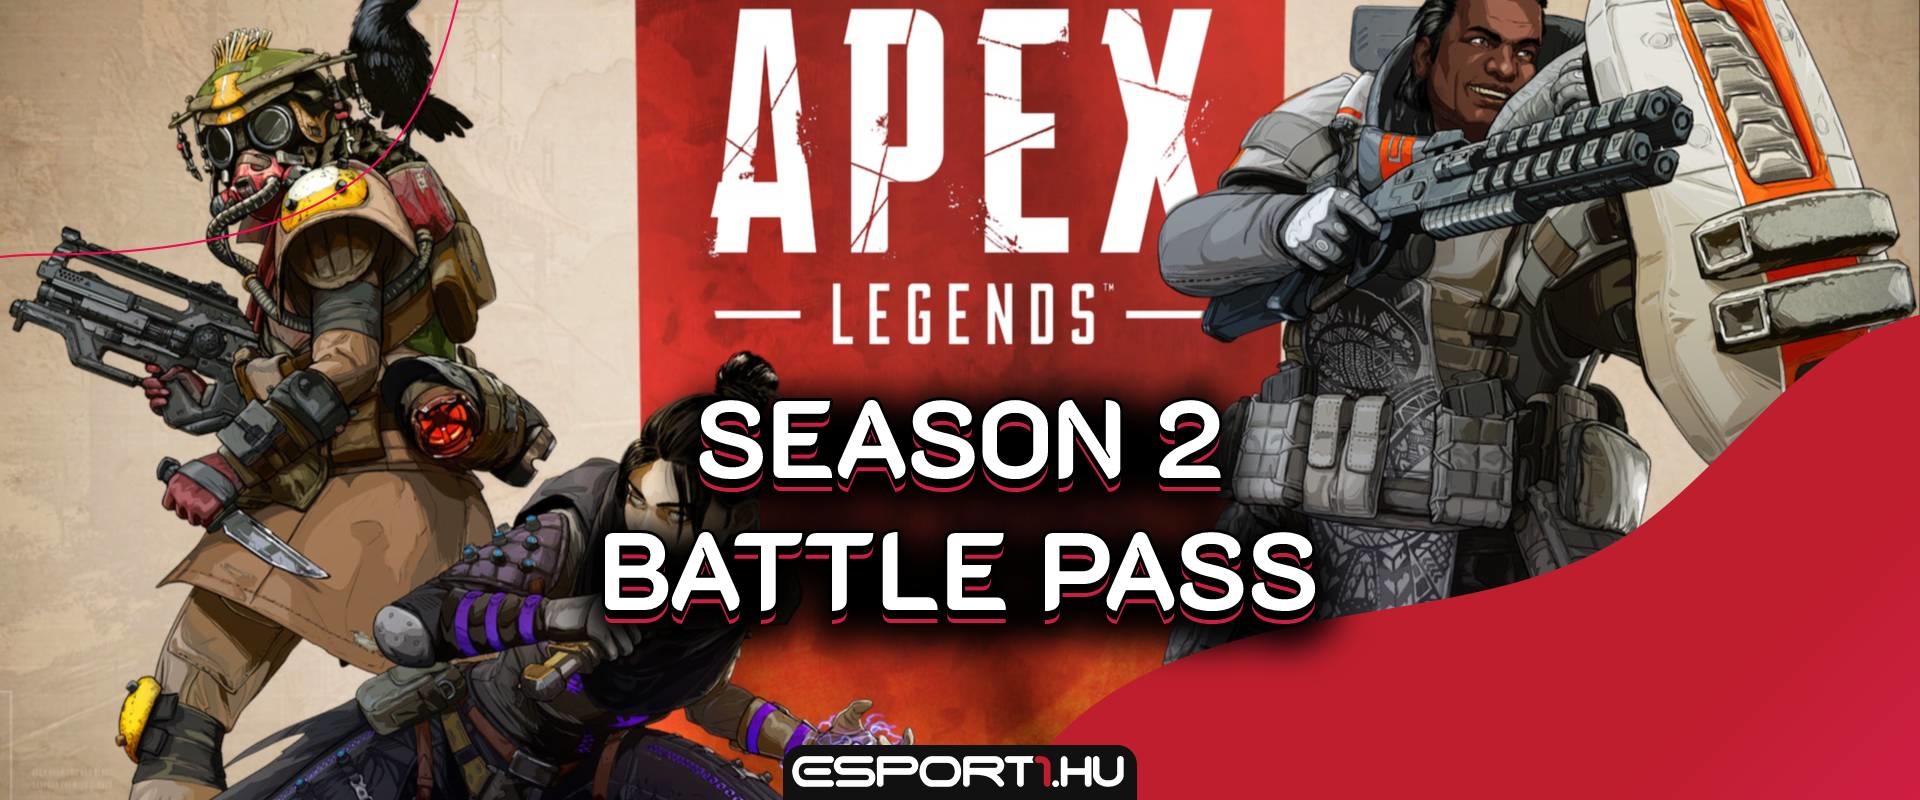 Több Legendary skinnel és új tárgykategóriákkal jön az Apex következő Battle Pass-je